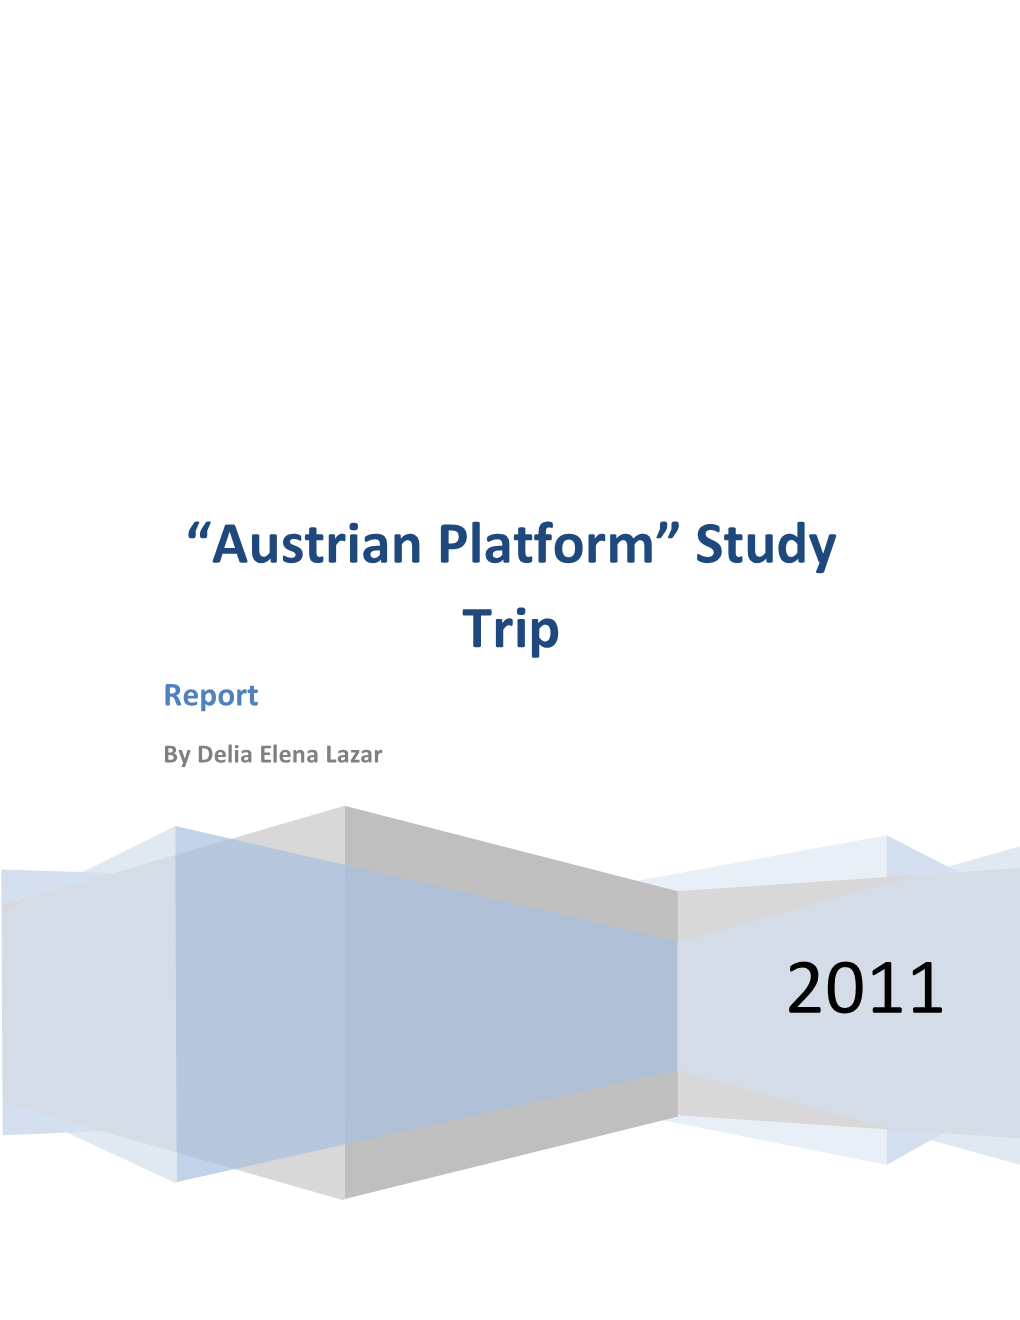 “Austrian Platform” Study Trip Report